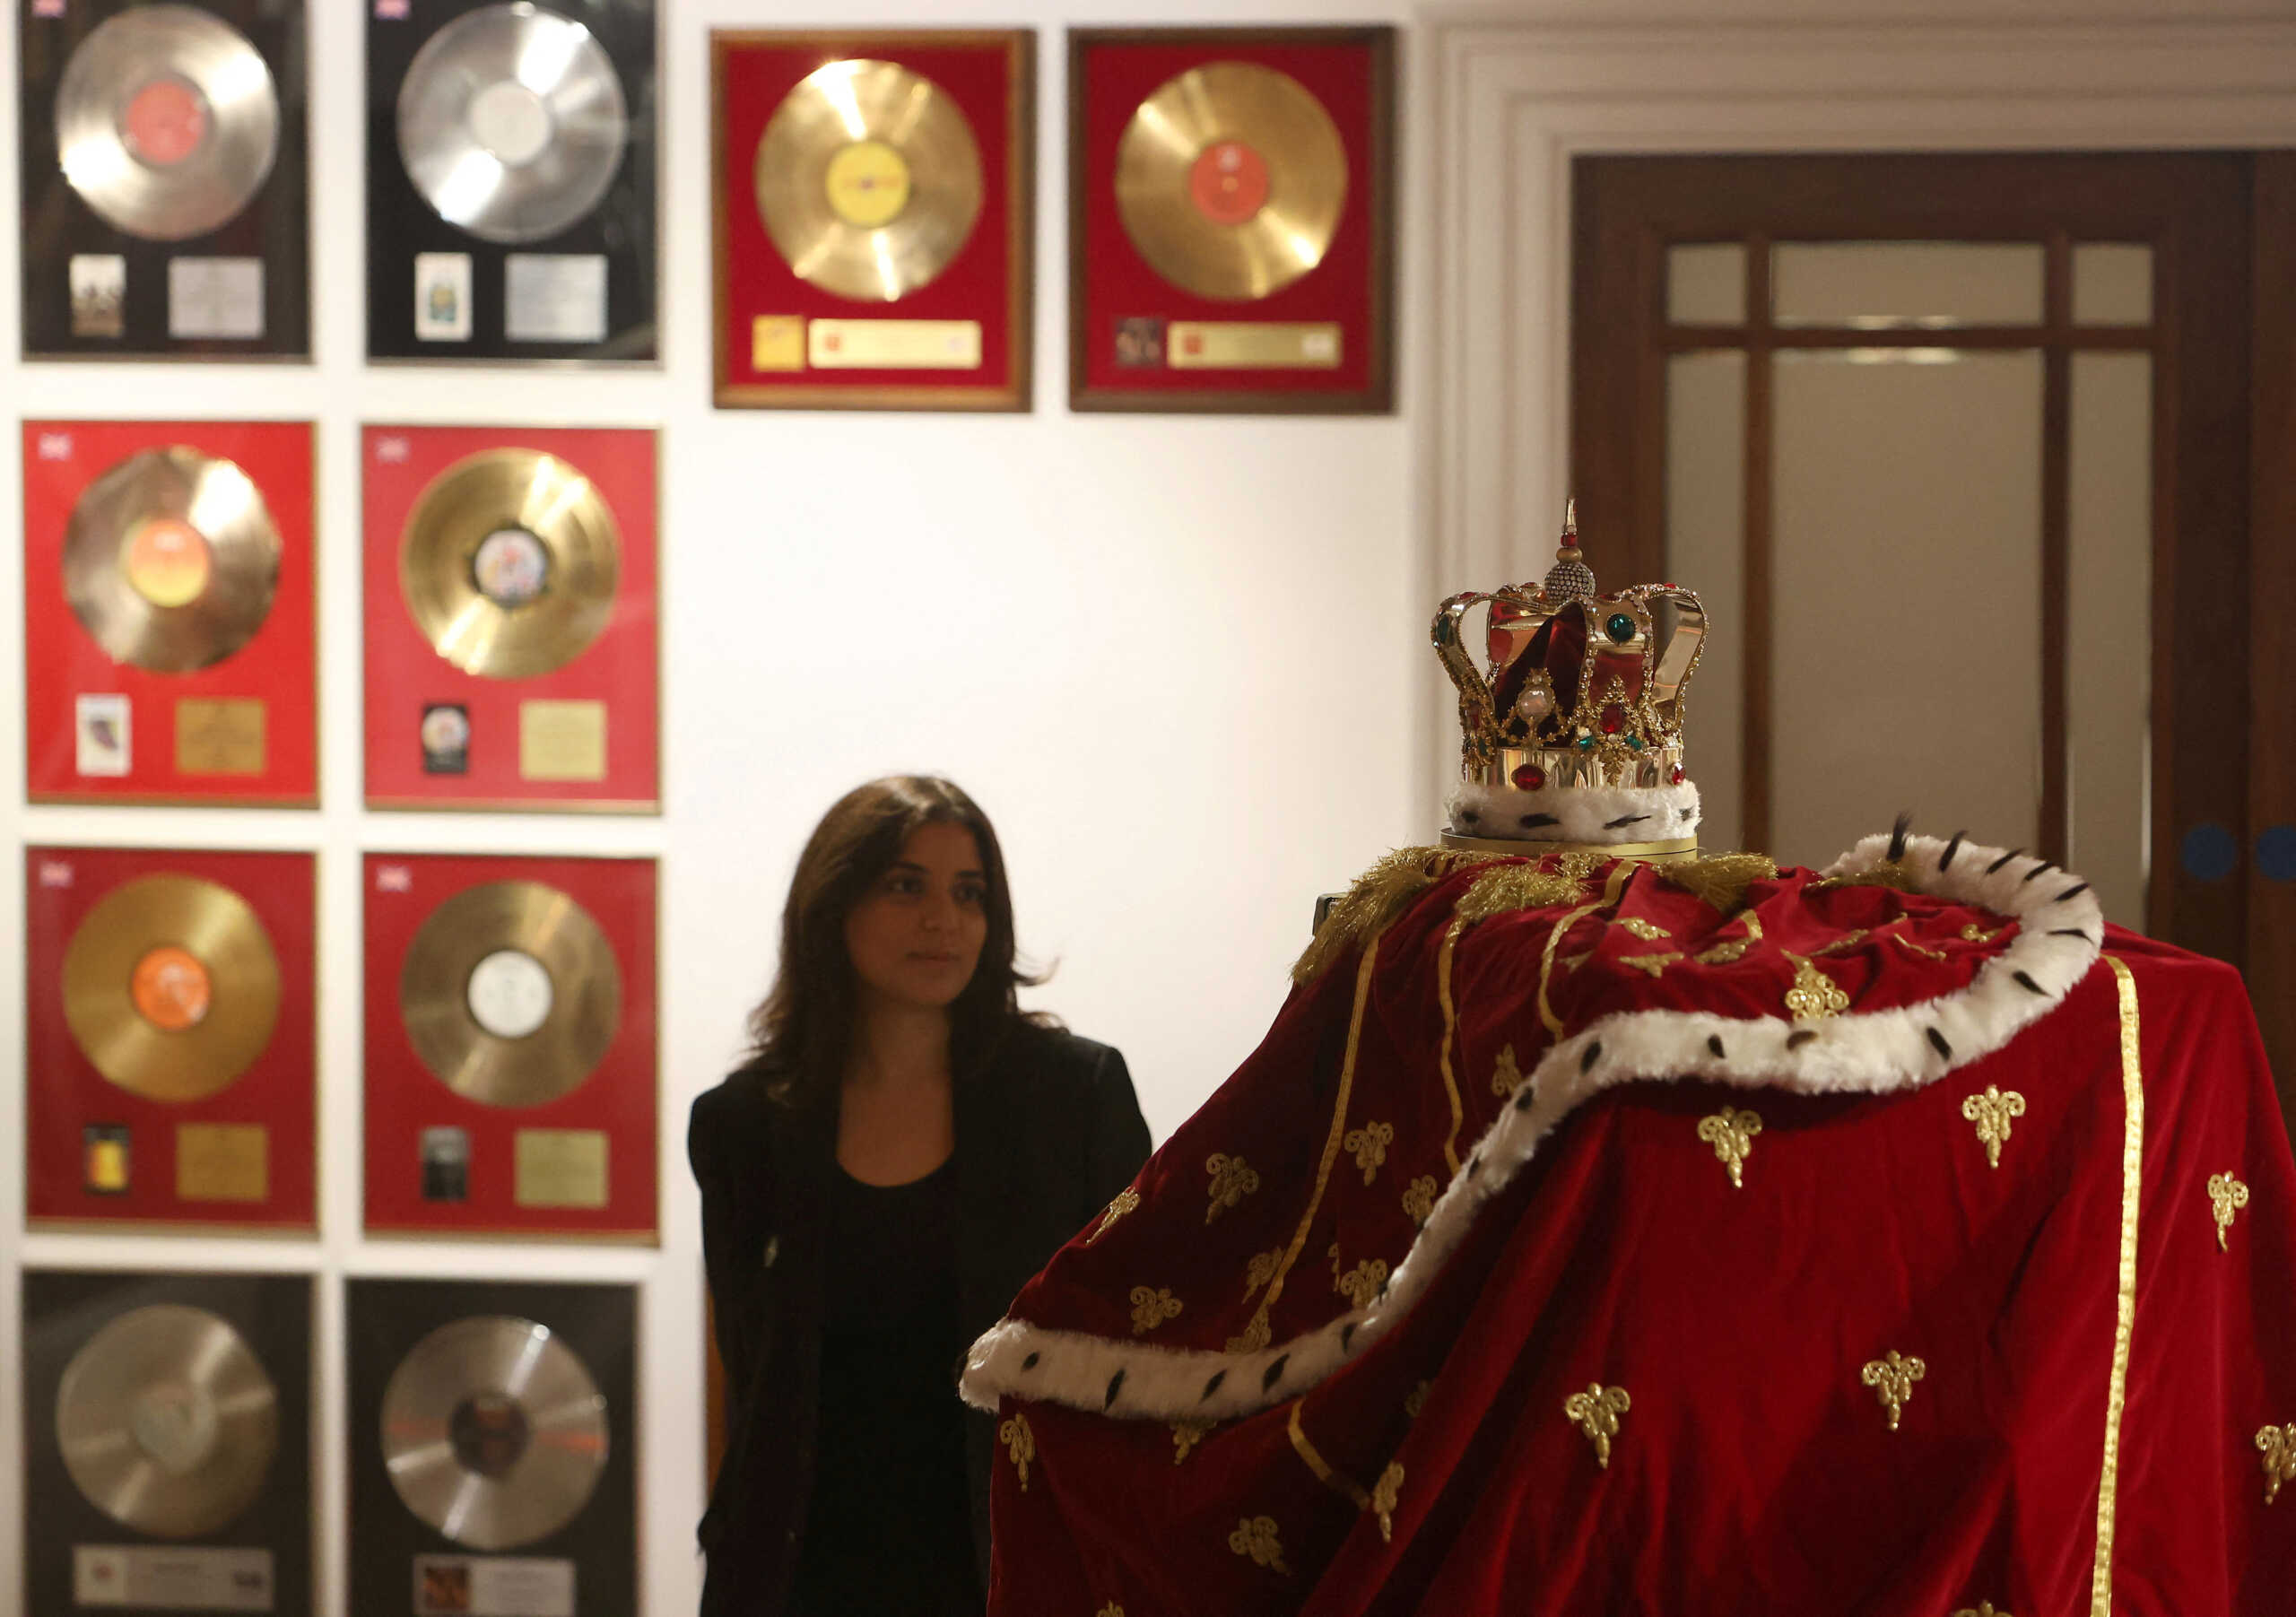 Φρέντι Μέρκιουρι: Δημοπρασία με σπάνια και πολύτιμα αντικείμενα του θρυλικού τραγουδιστή των Queen